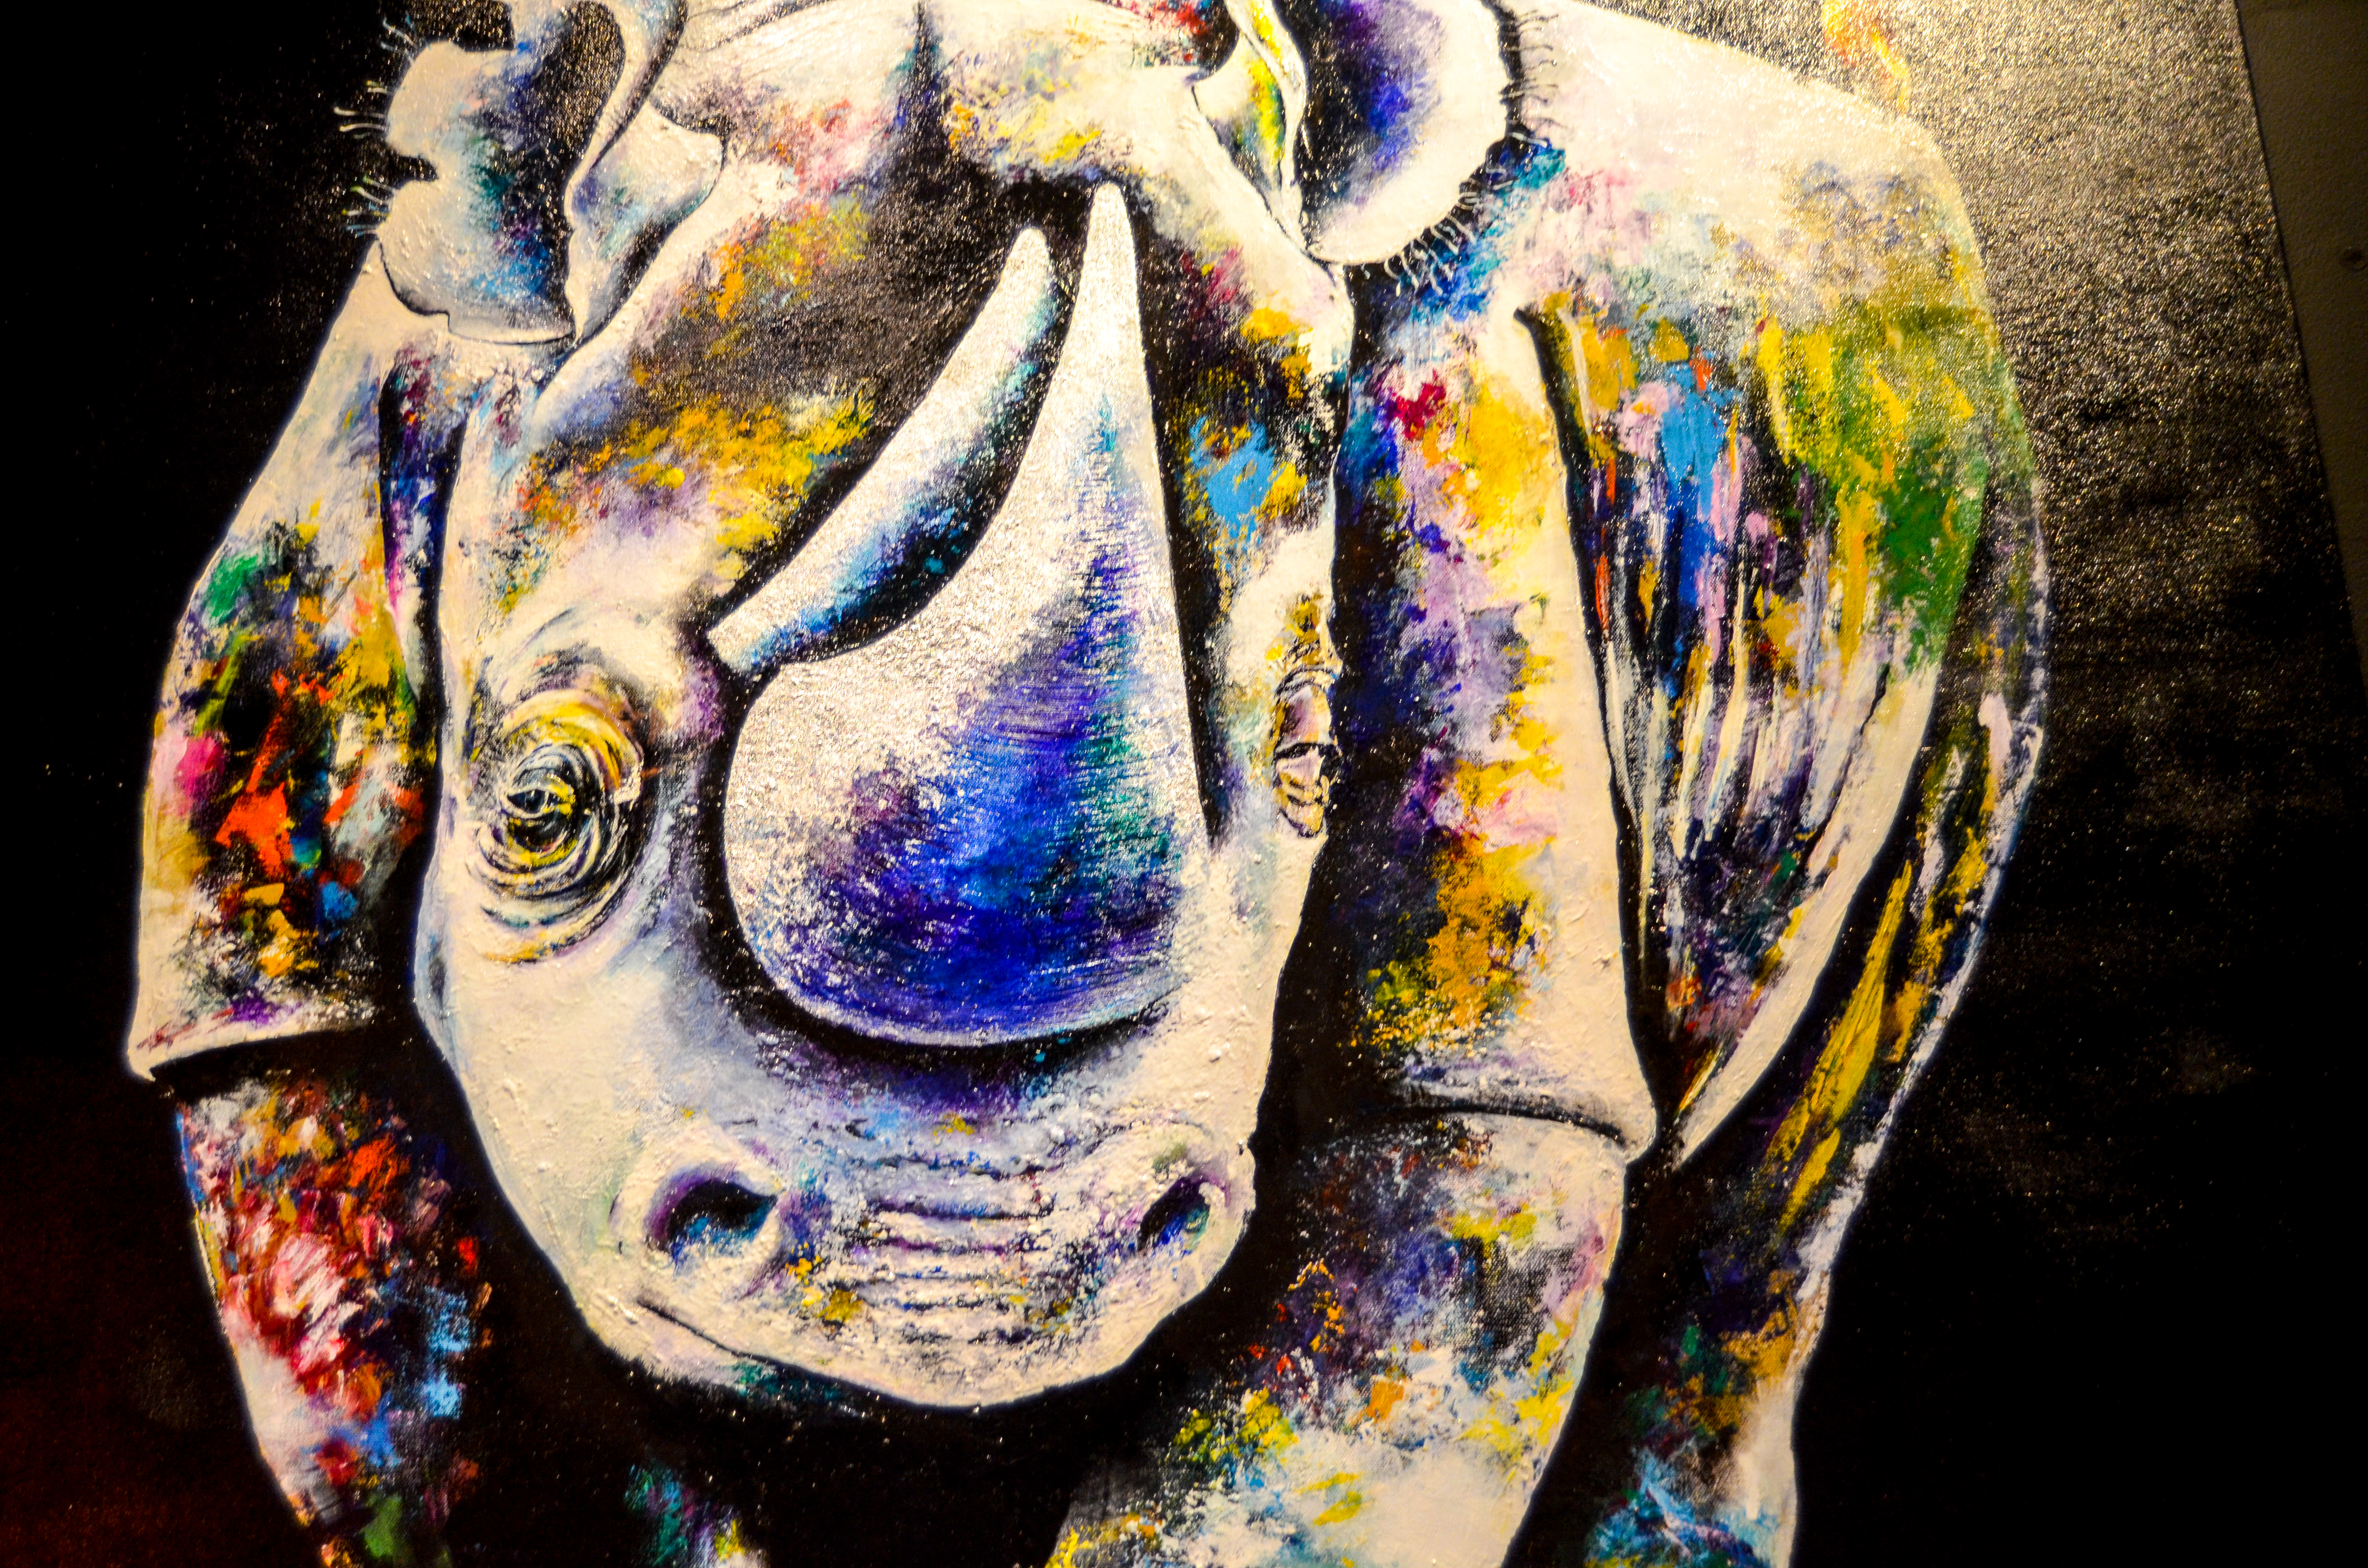 "Rhino" by Bountom Vongkaysone, inside the B.O.B.